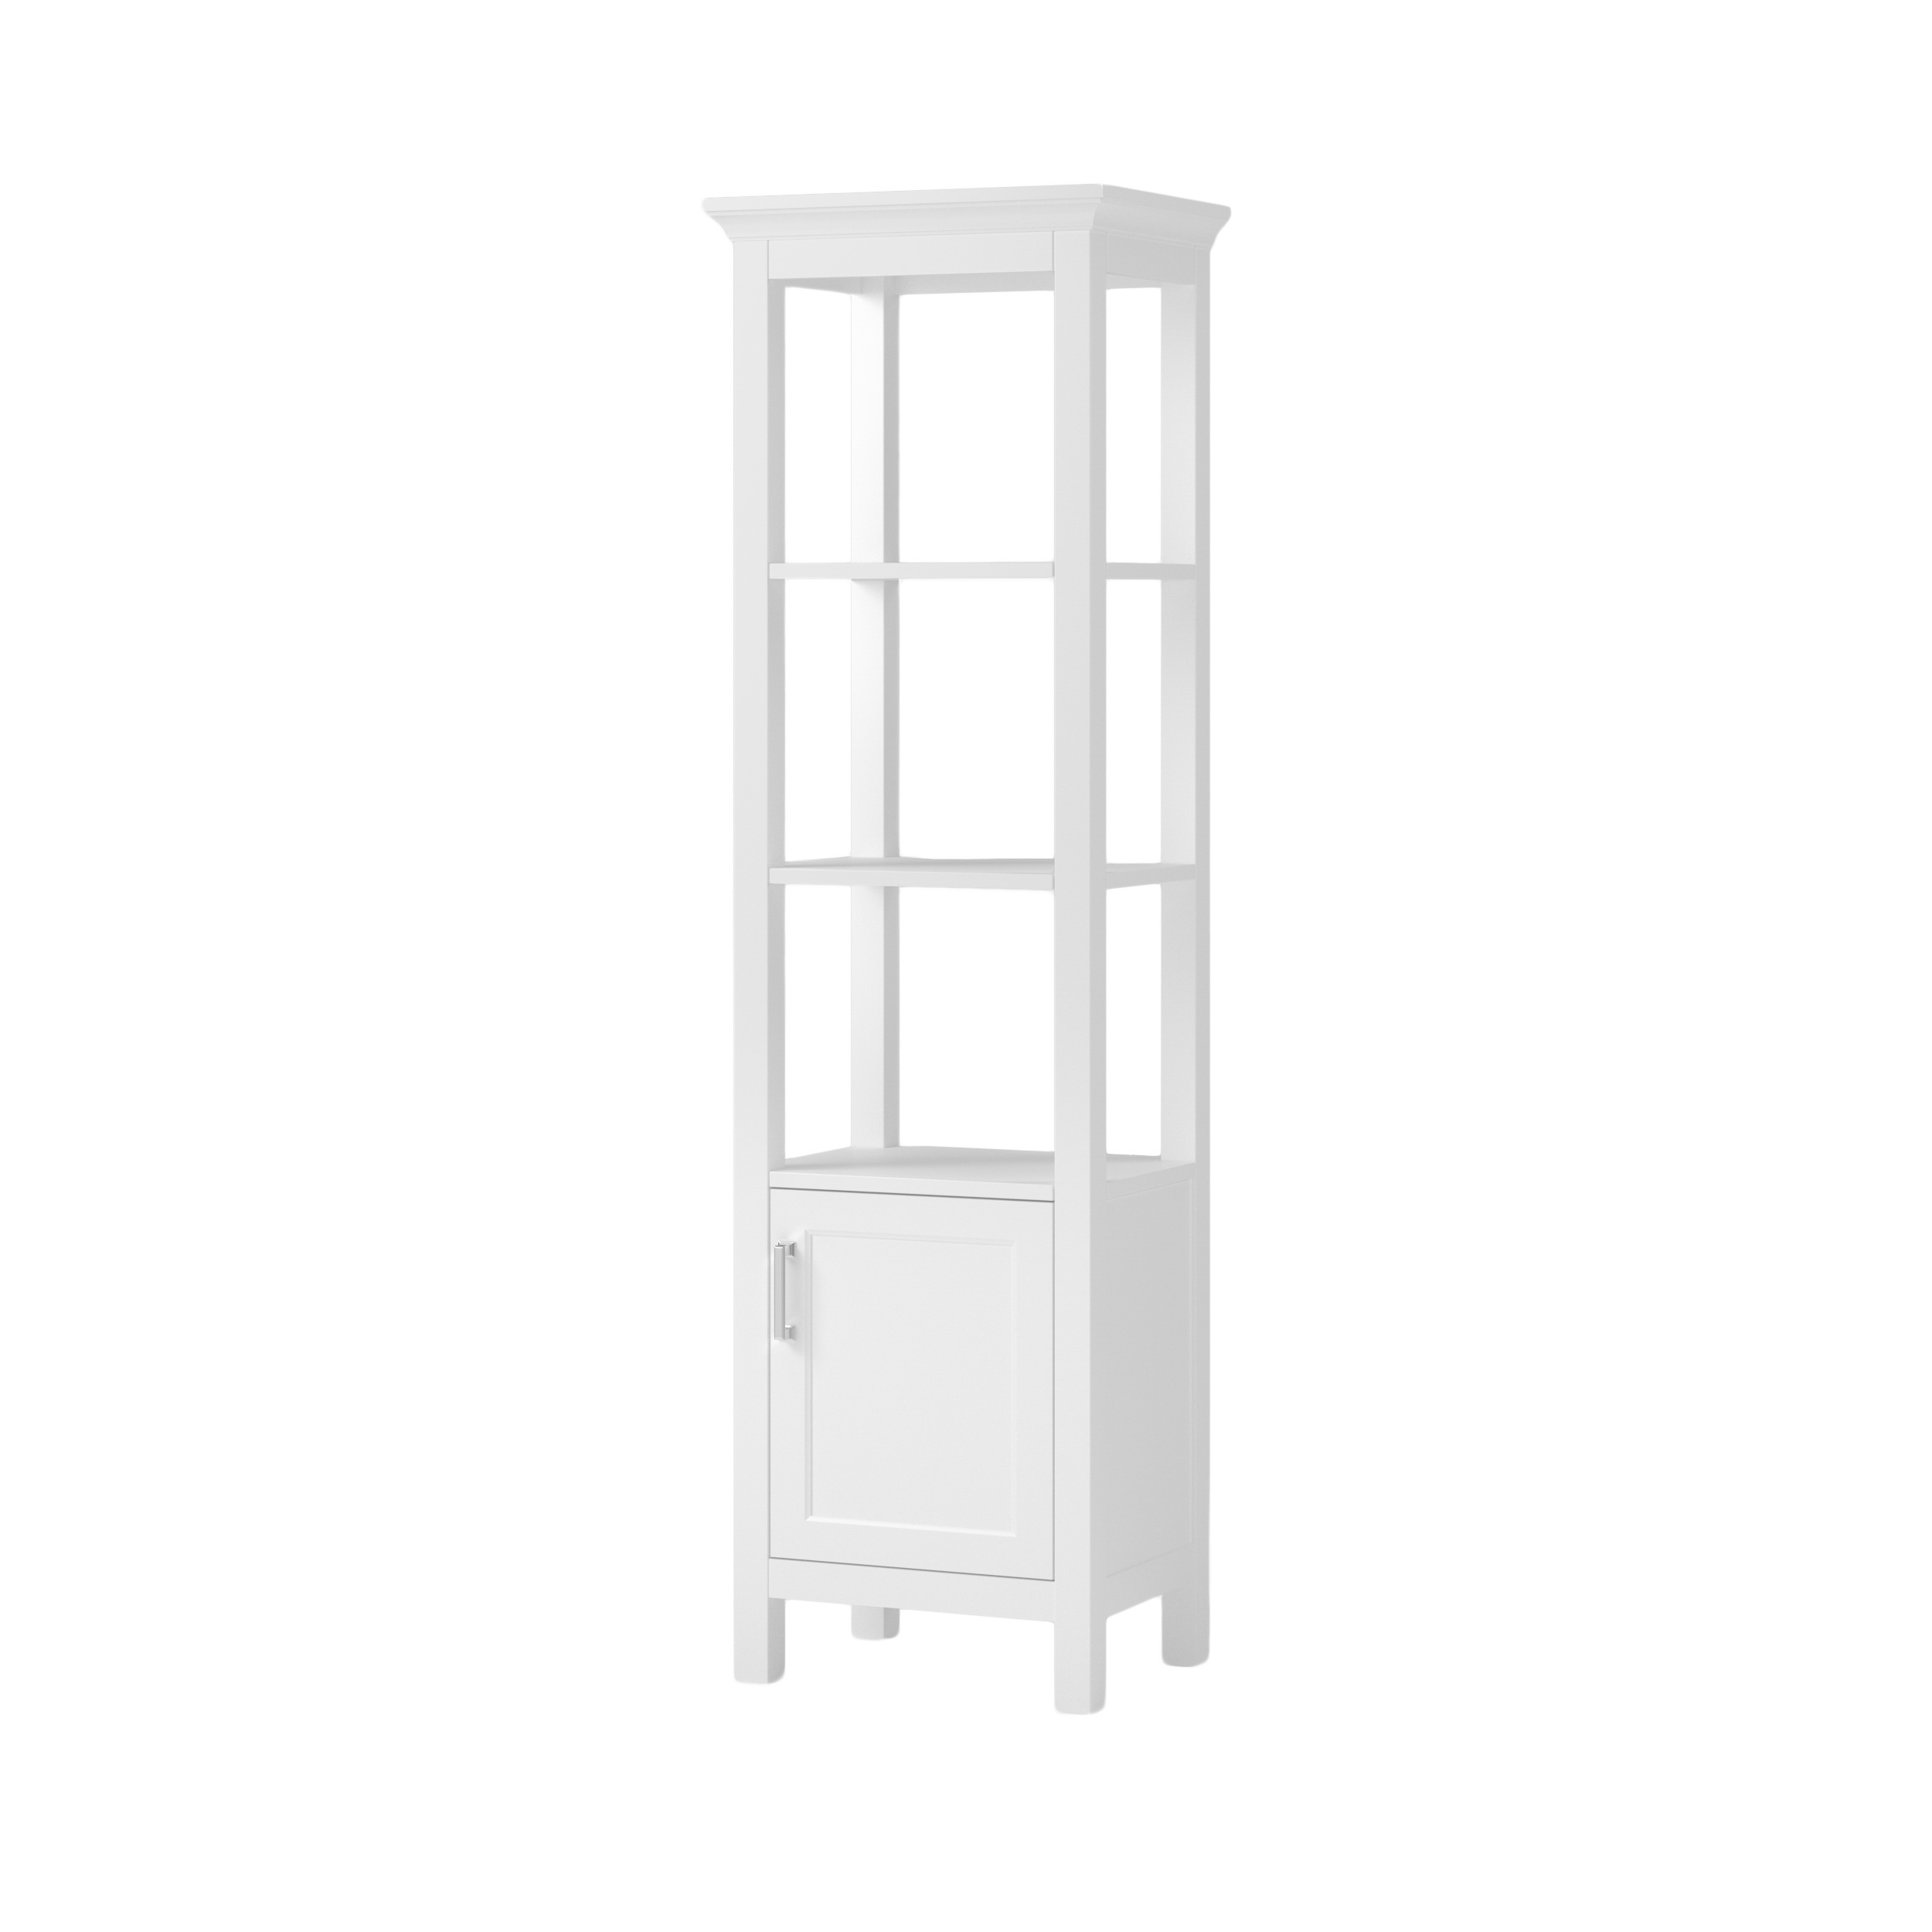 Hollis Series HOWL1970 Linen Cabinet, 1-Door, 2-Shelf, Natural Wood